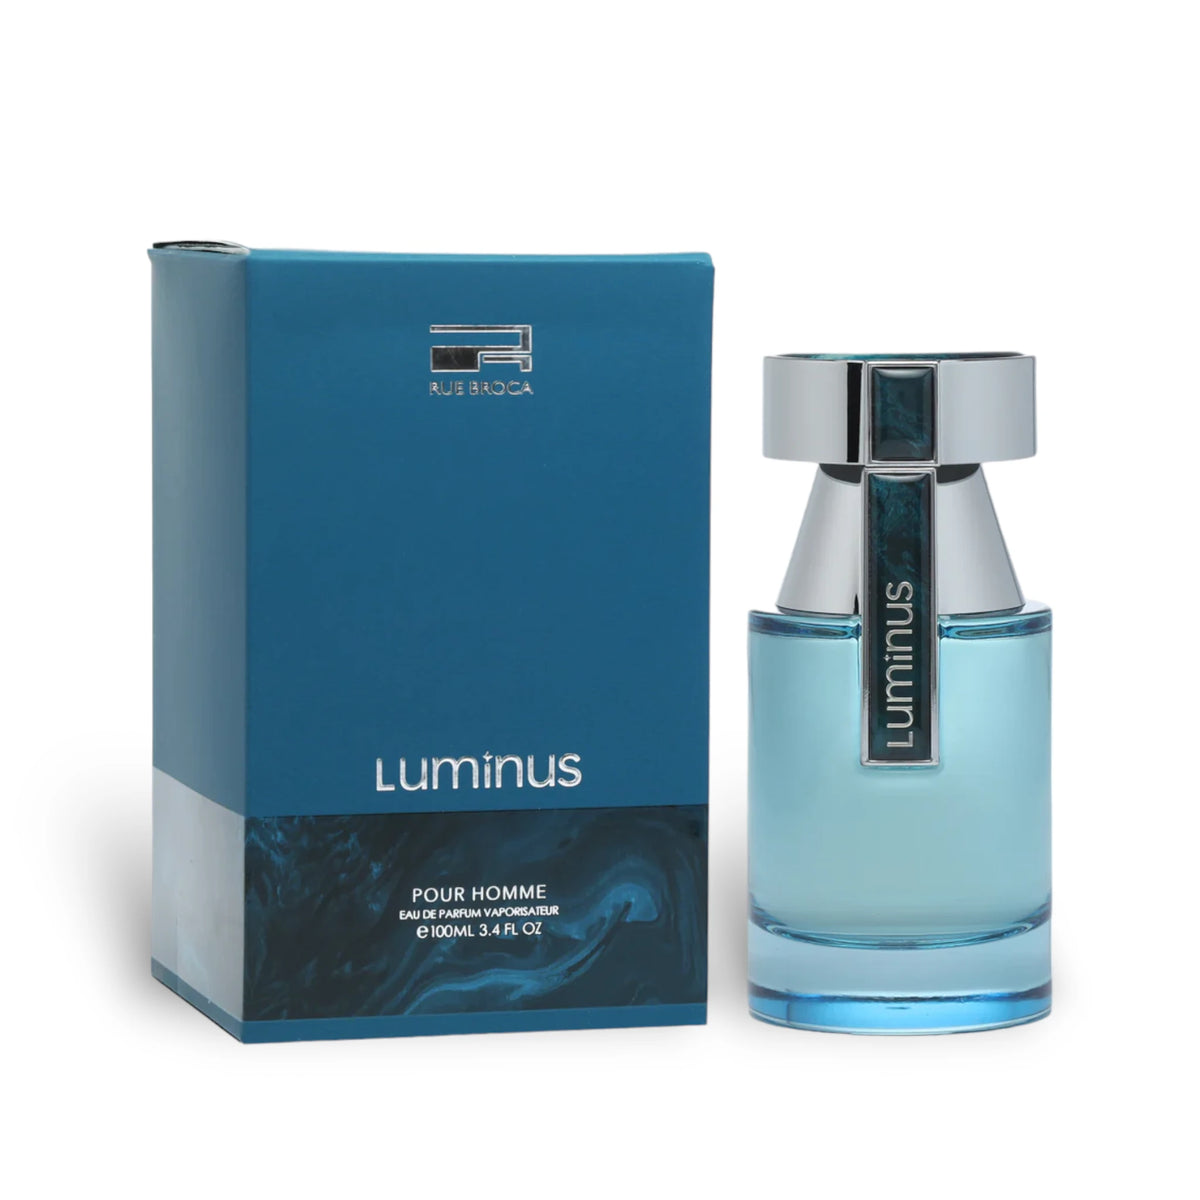 Luminous Pour Homme 100ml - Eau de Parfum - Rue Broca by Afnan